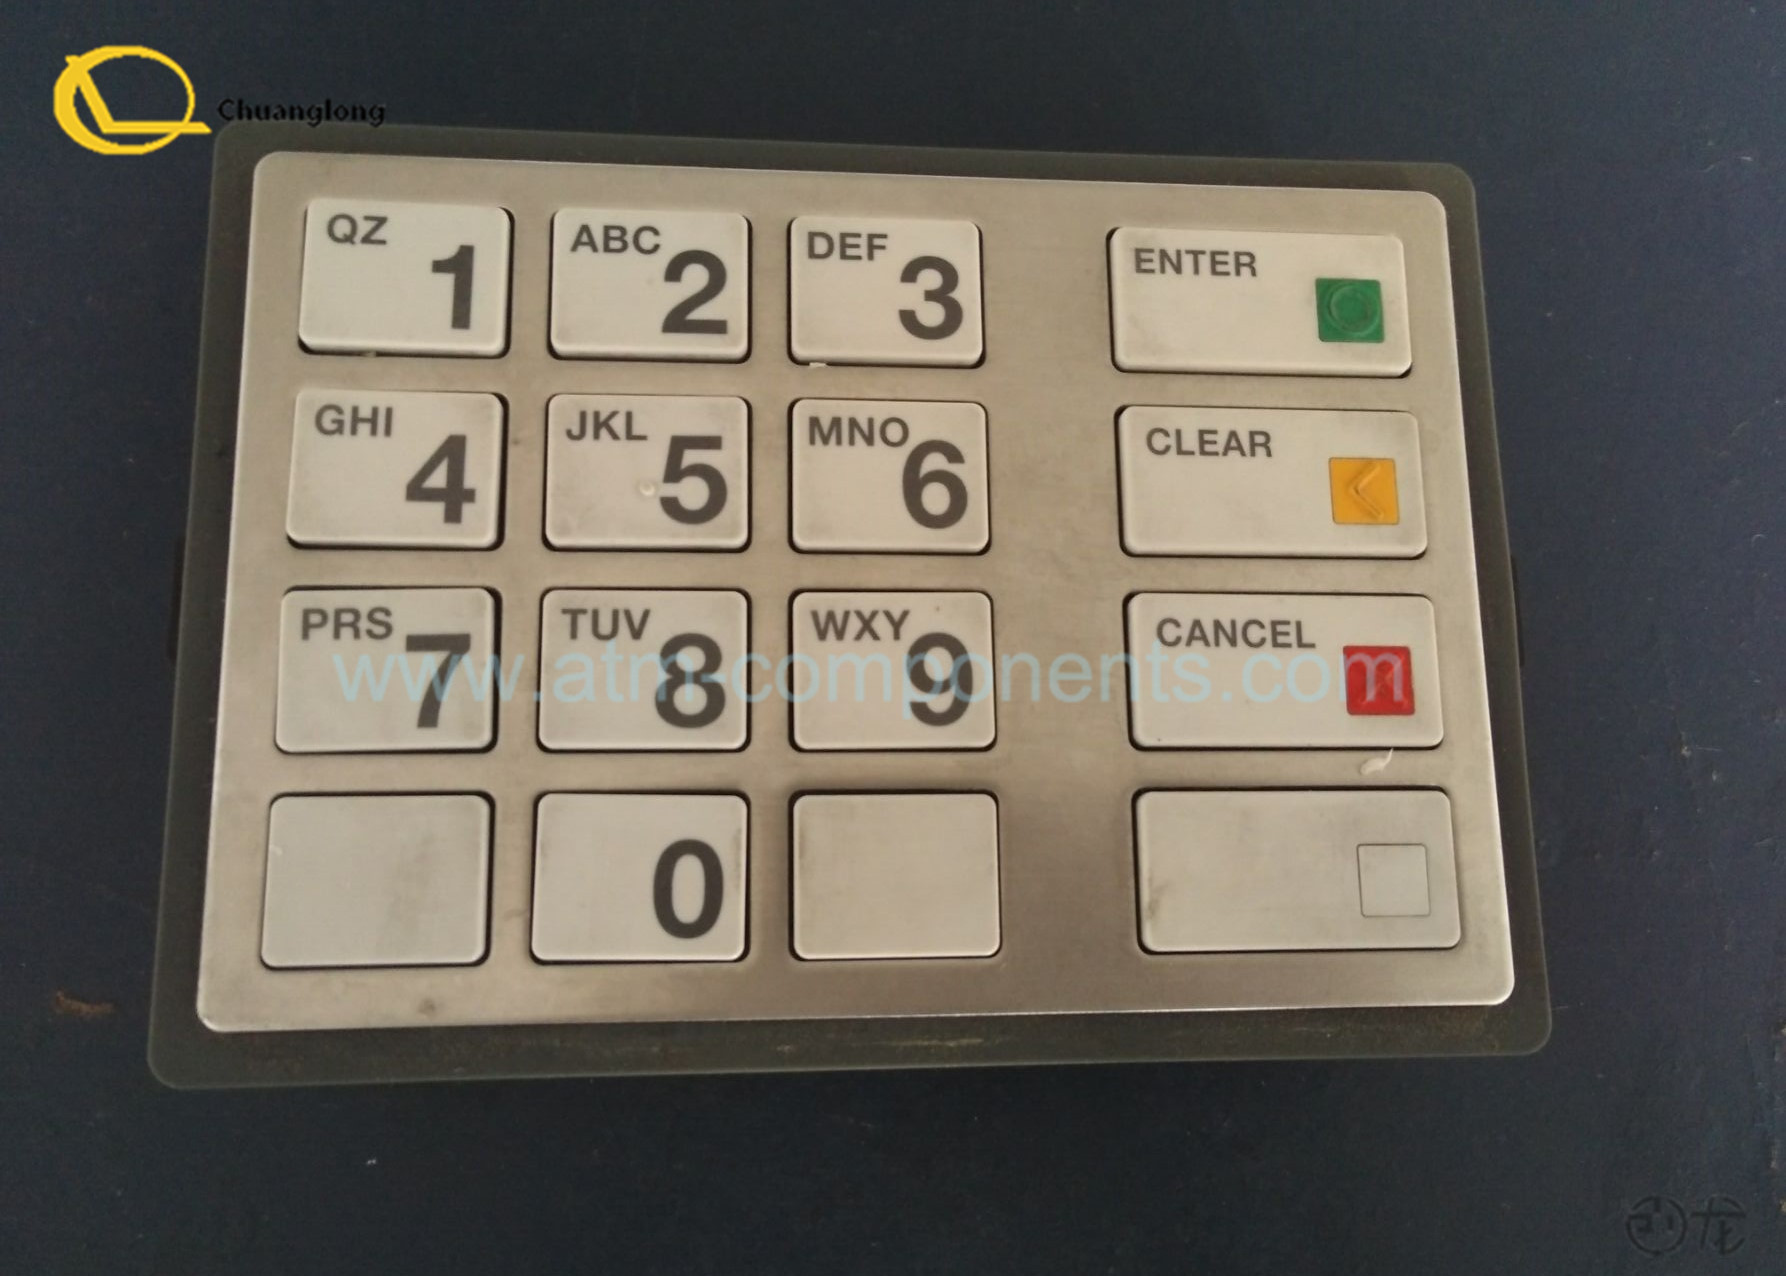 Projete a almofada do Pin de EPP7 Atm, tempo longo do teclado numérico Touchable de Citibank Atm